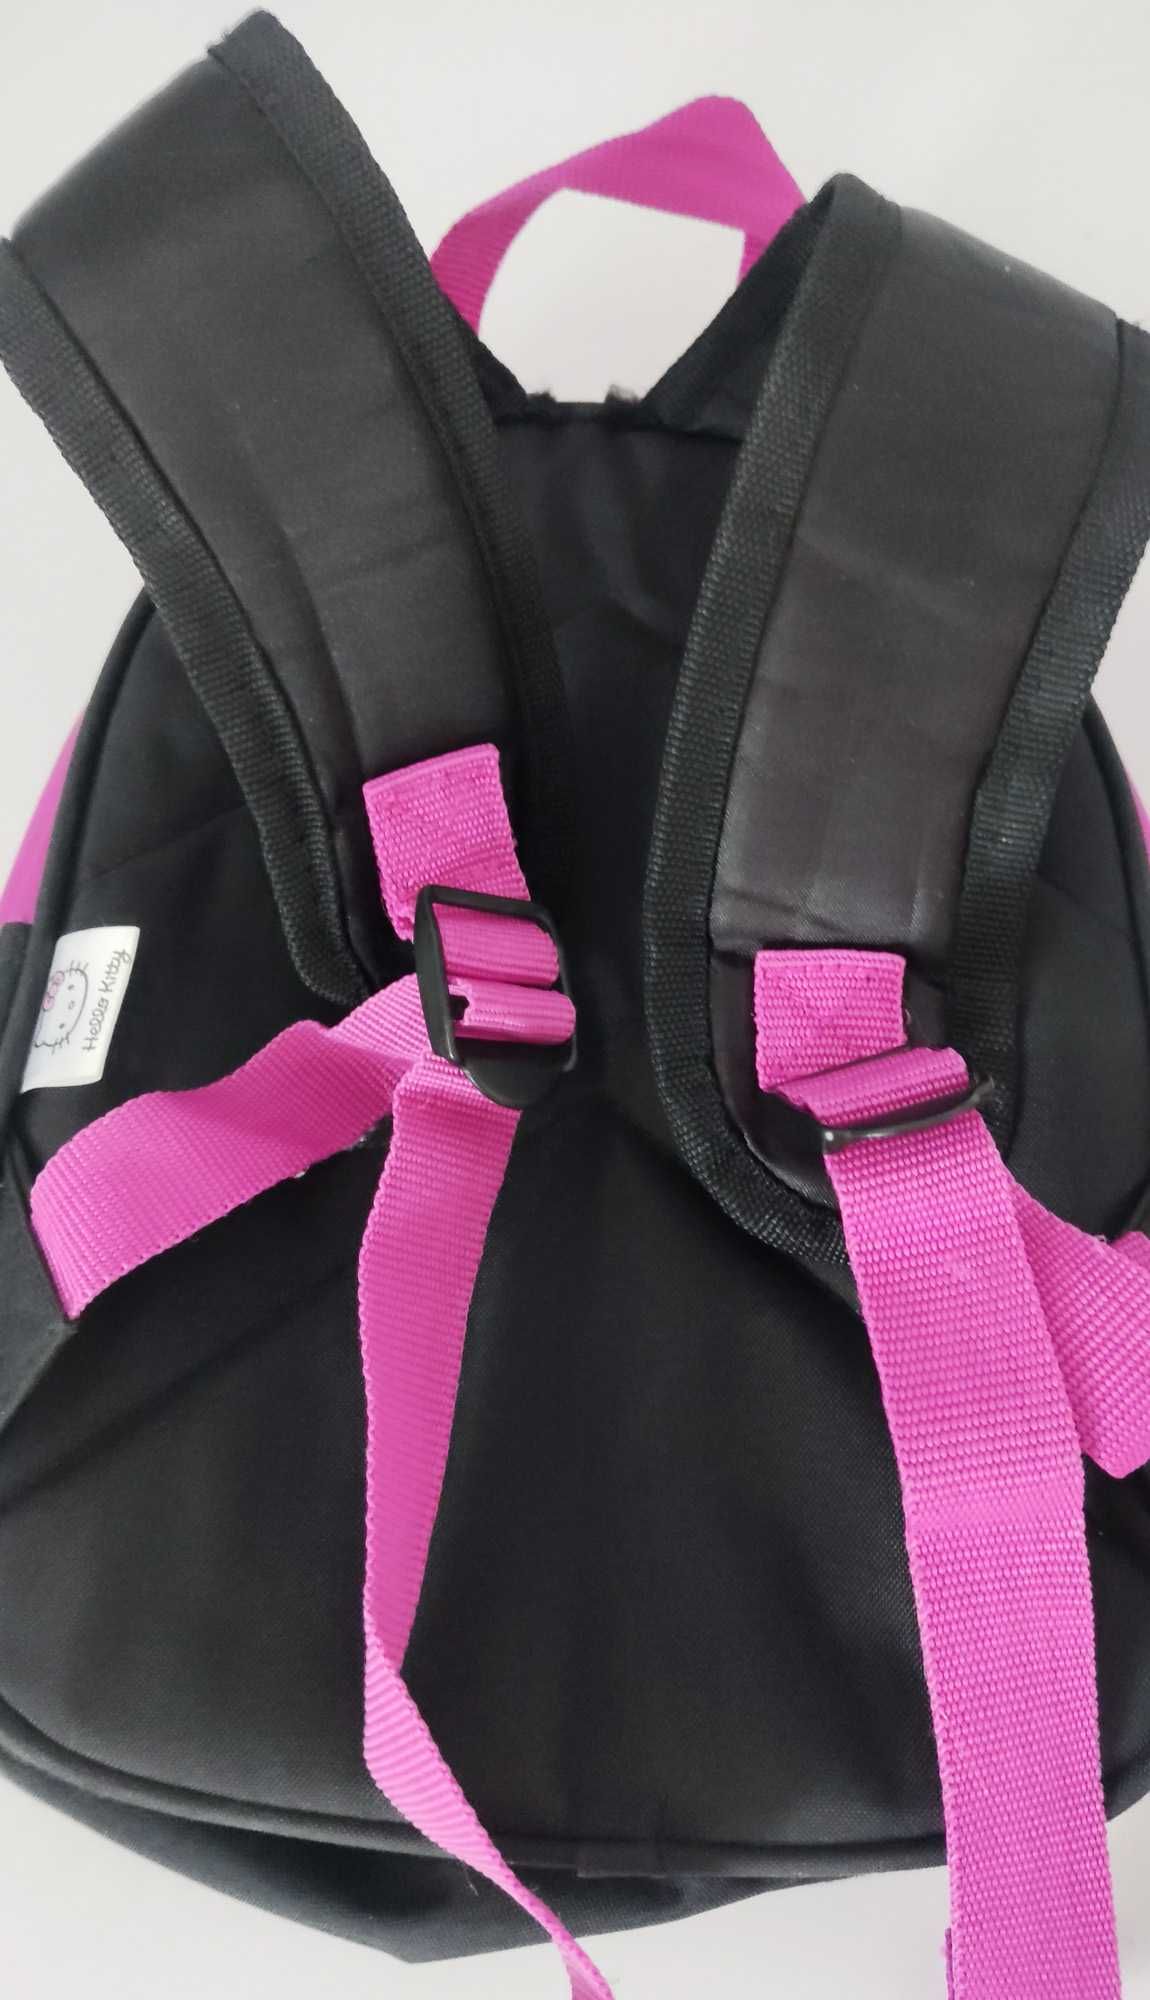 Śliczny Plecak HELLO KITTY różowy czarny do przedszkola dziewczynki